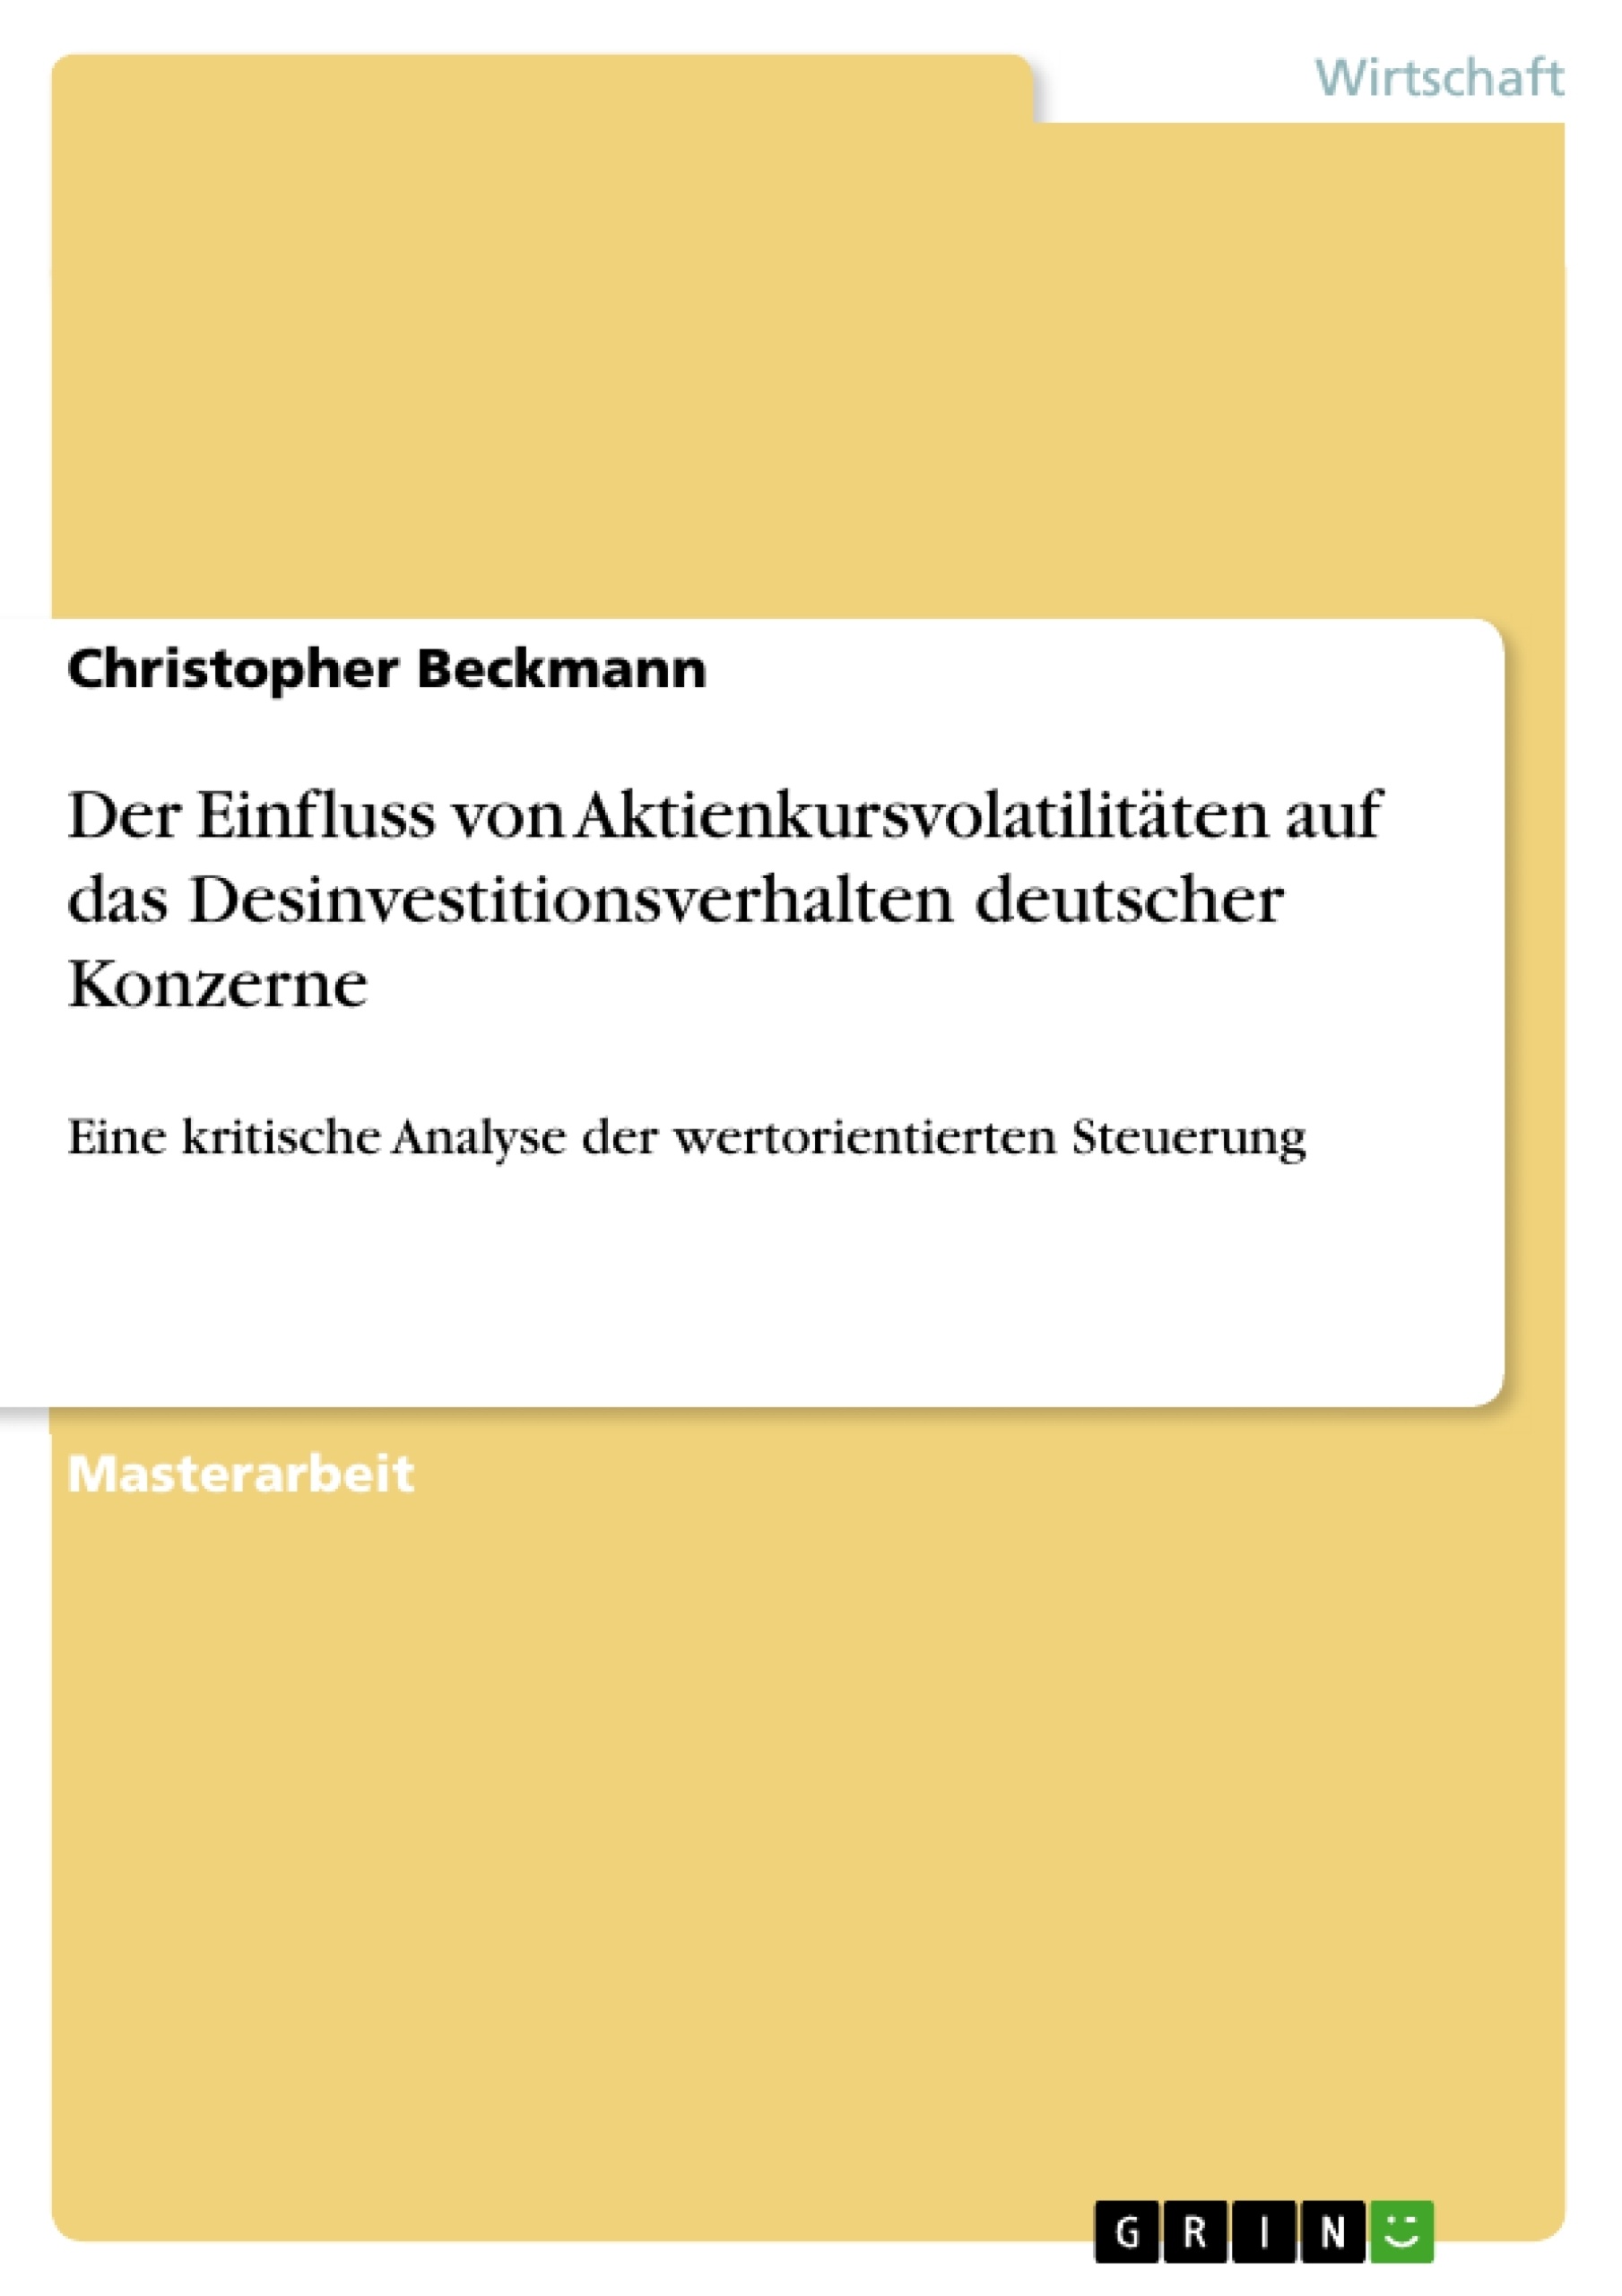 Title: Der Einfluss von Aktienkursvolatilitäten auf das Desinvestitionsverhalten deutscher Konzerne